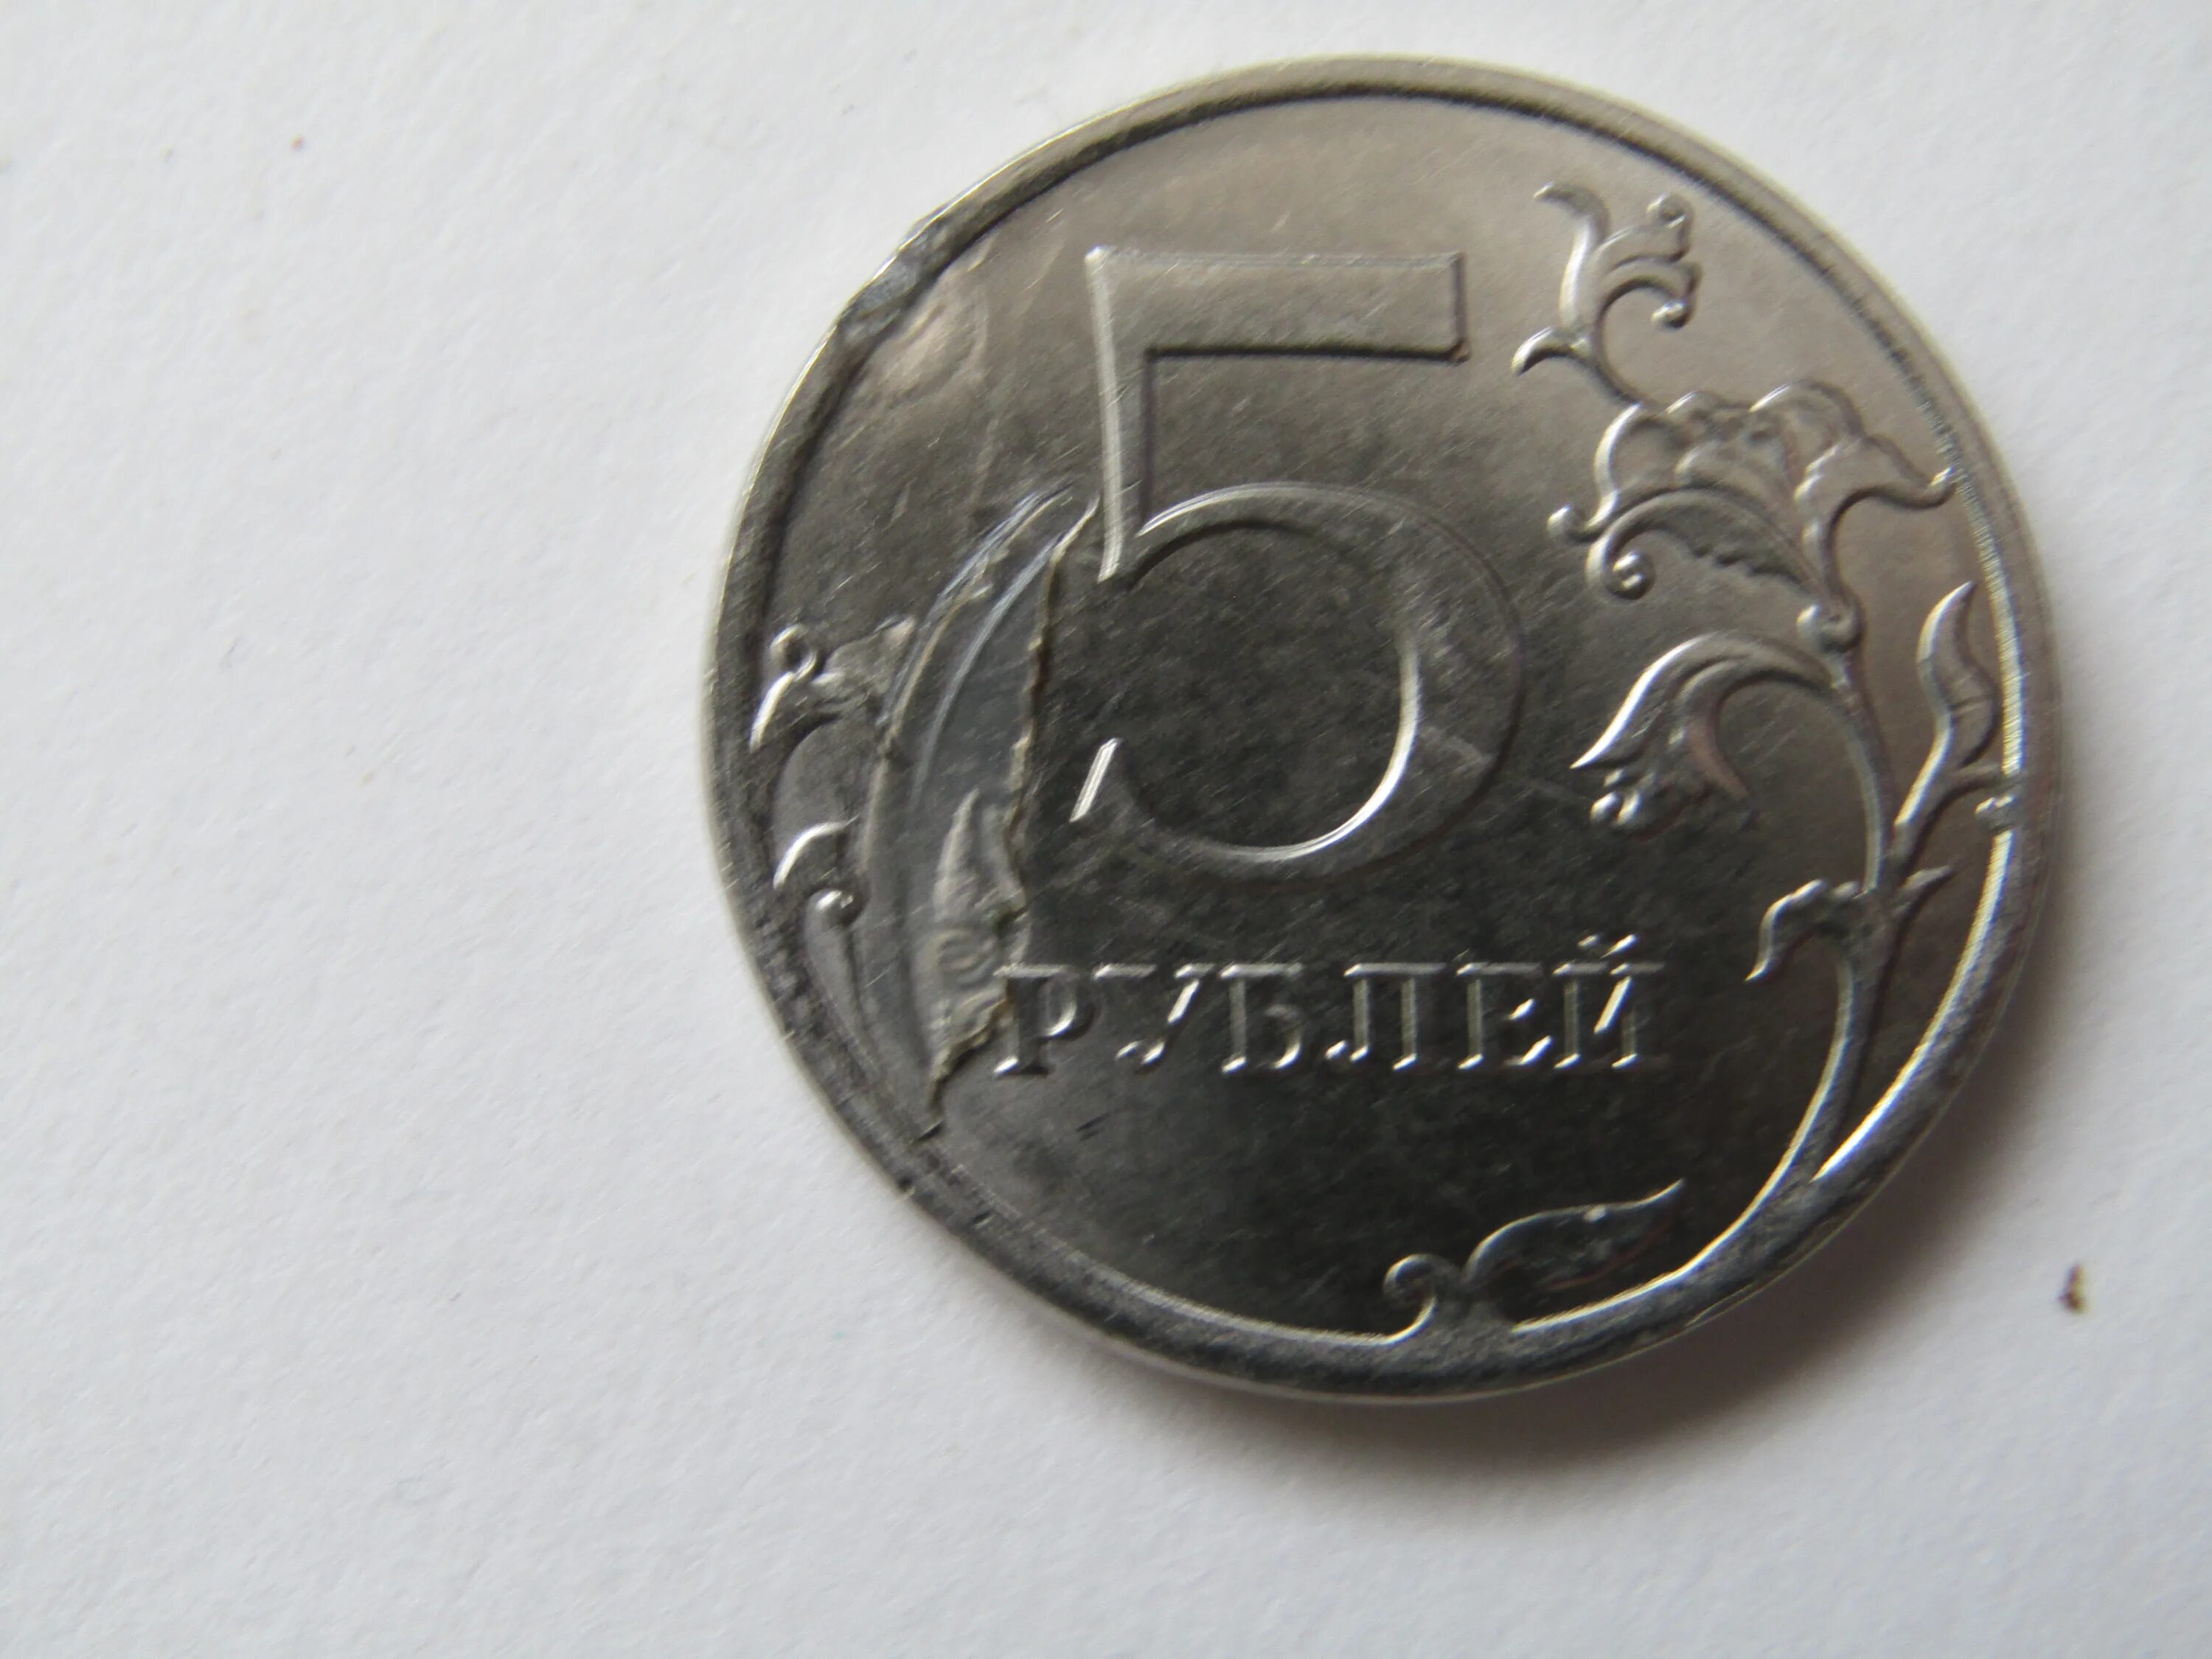 47 5 рубля